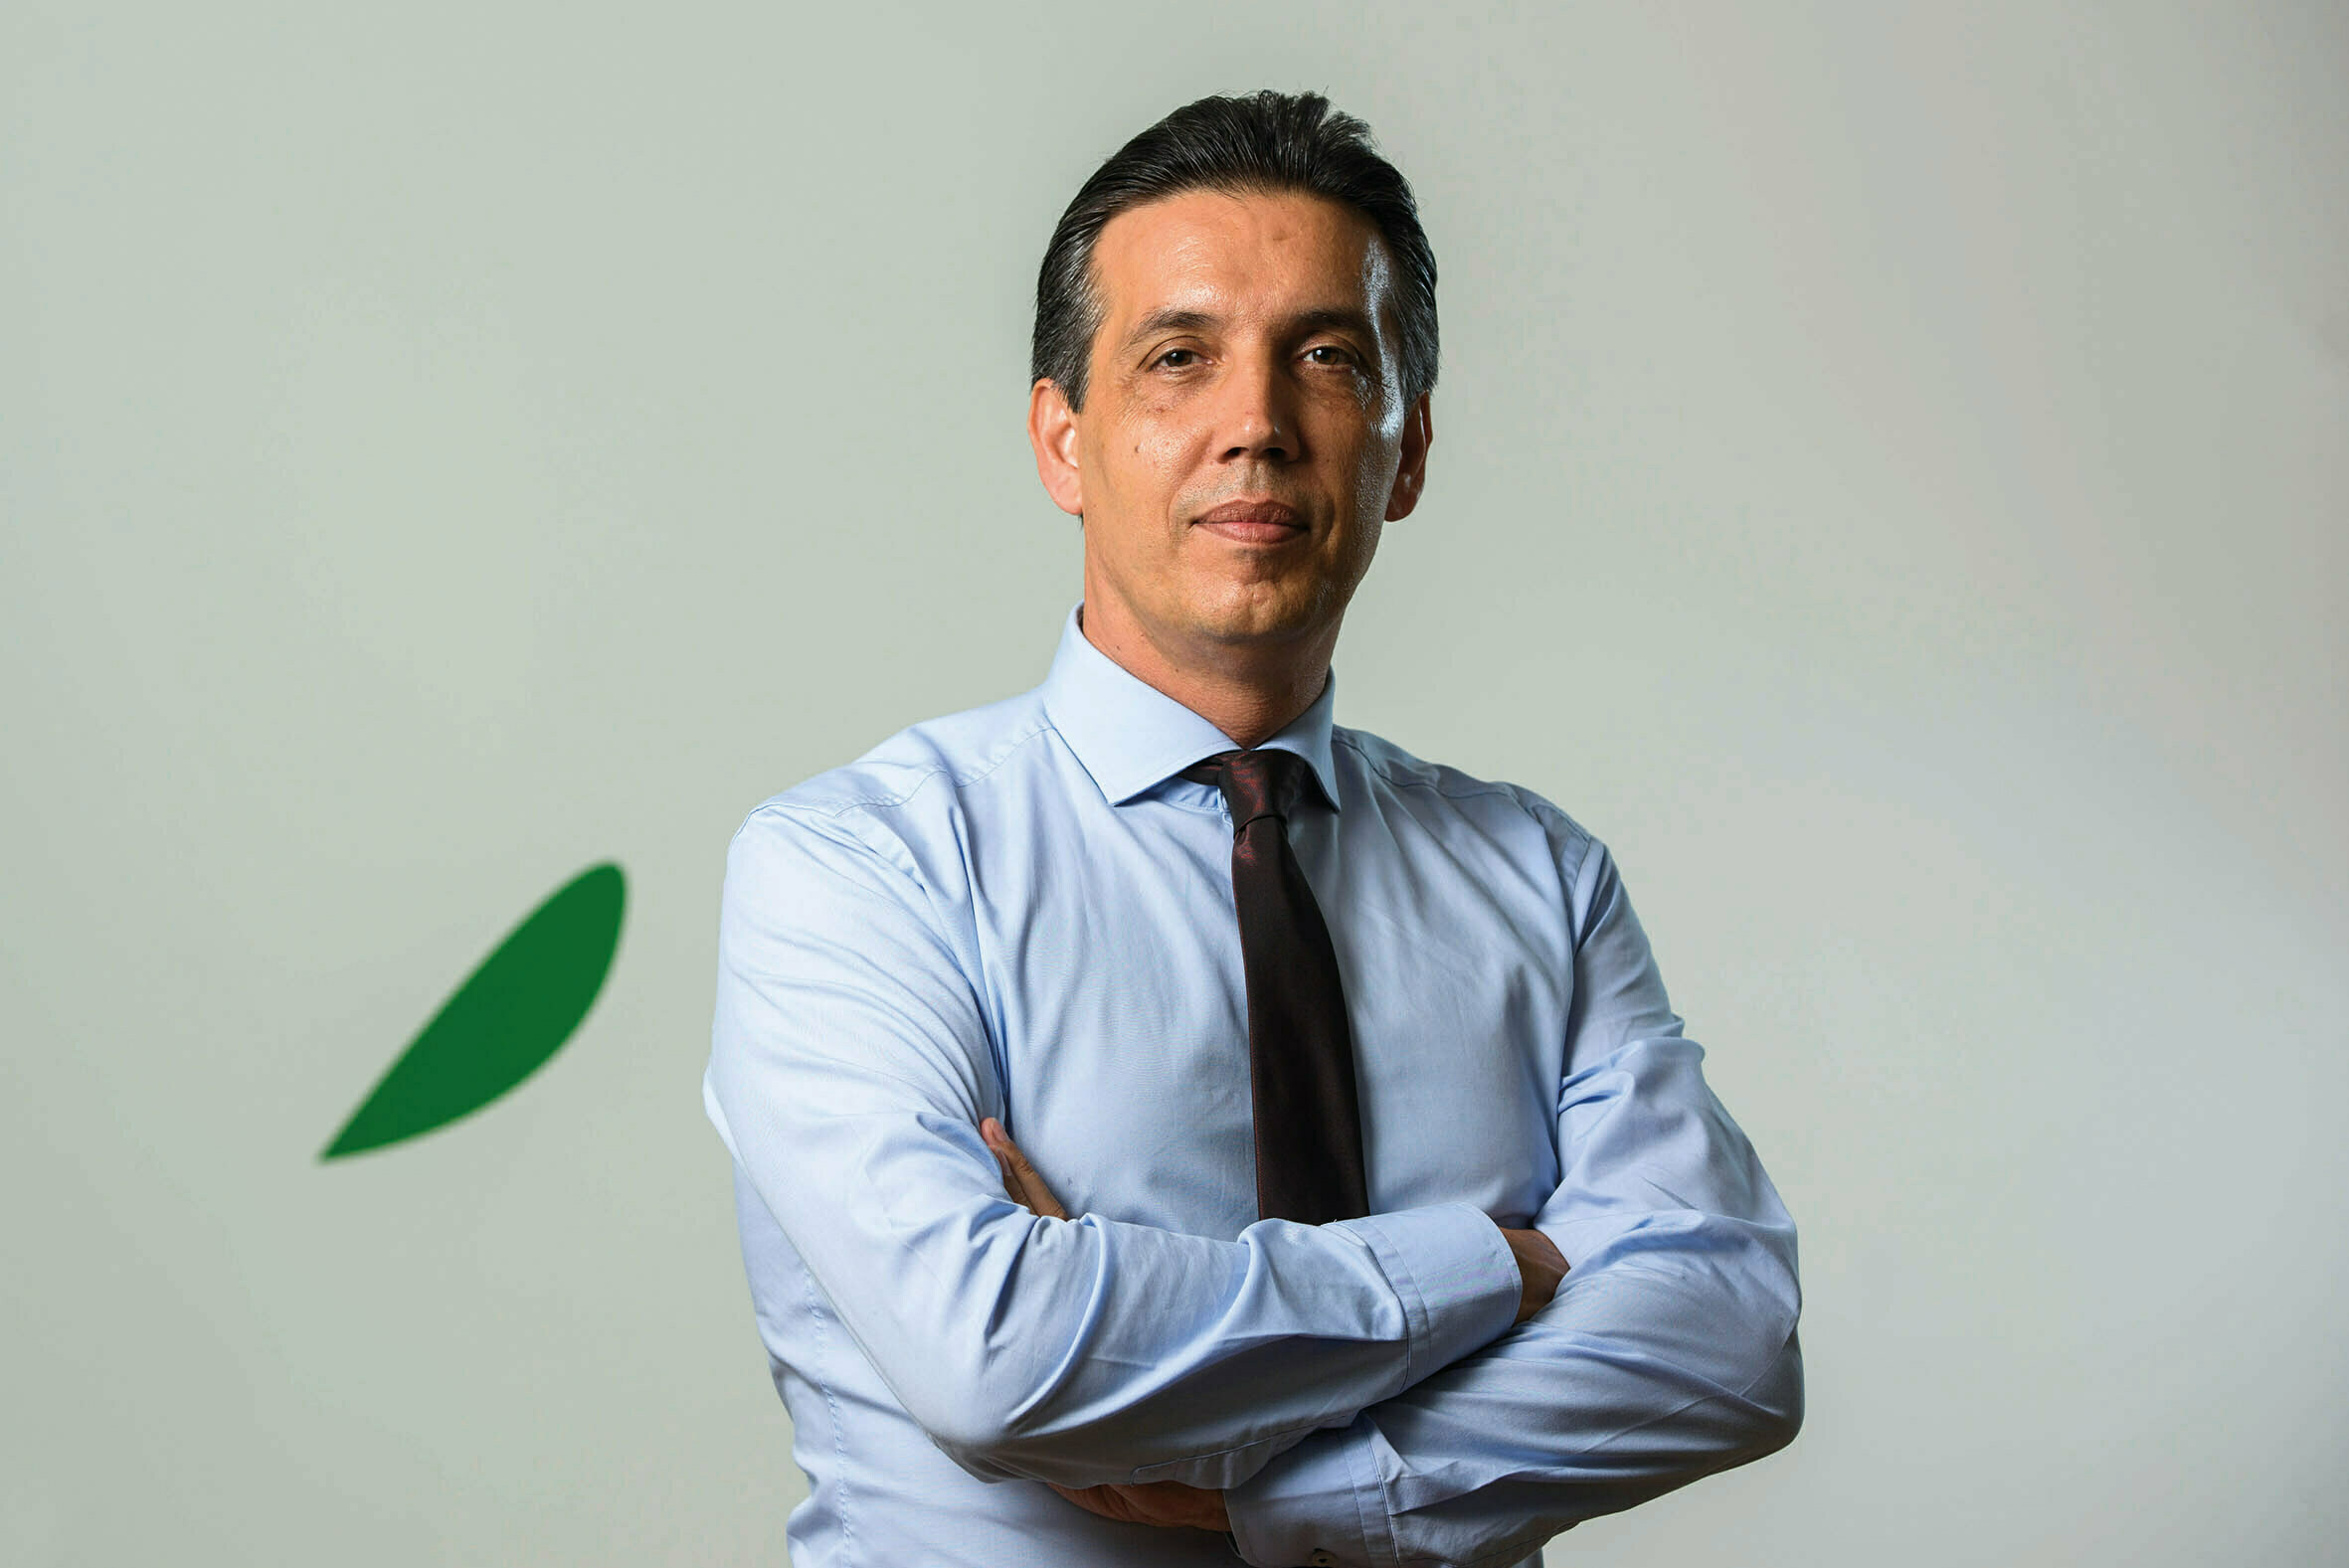 João Miranda, chairman da Frulact e embaixador do Ecotrophelia